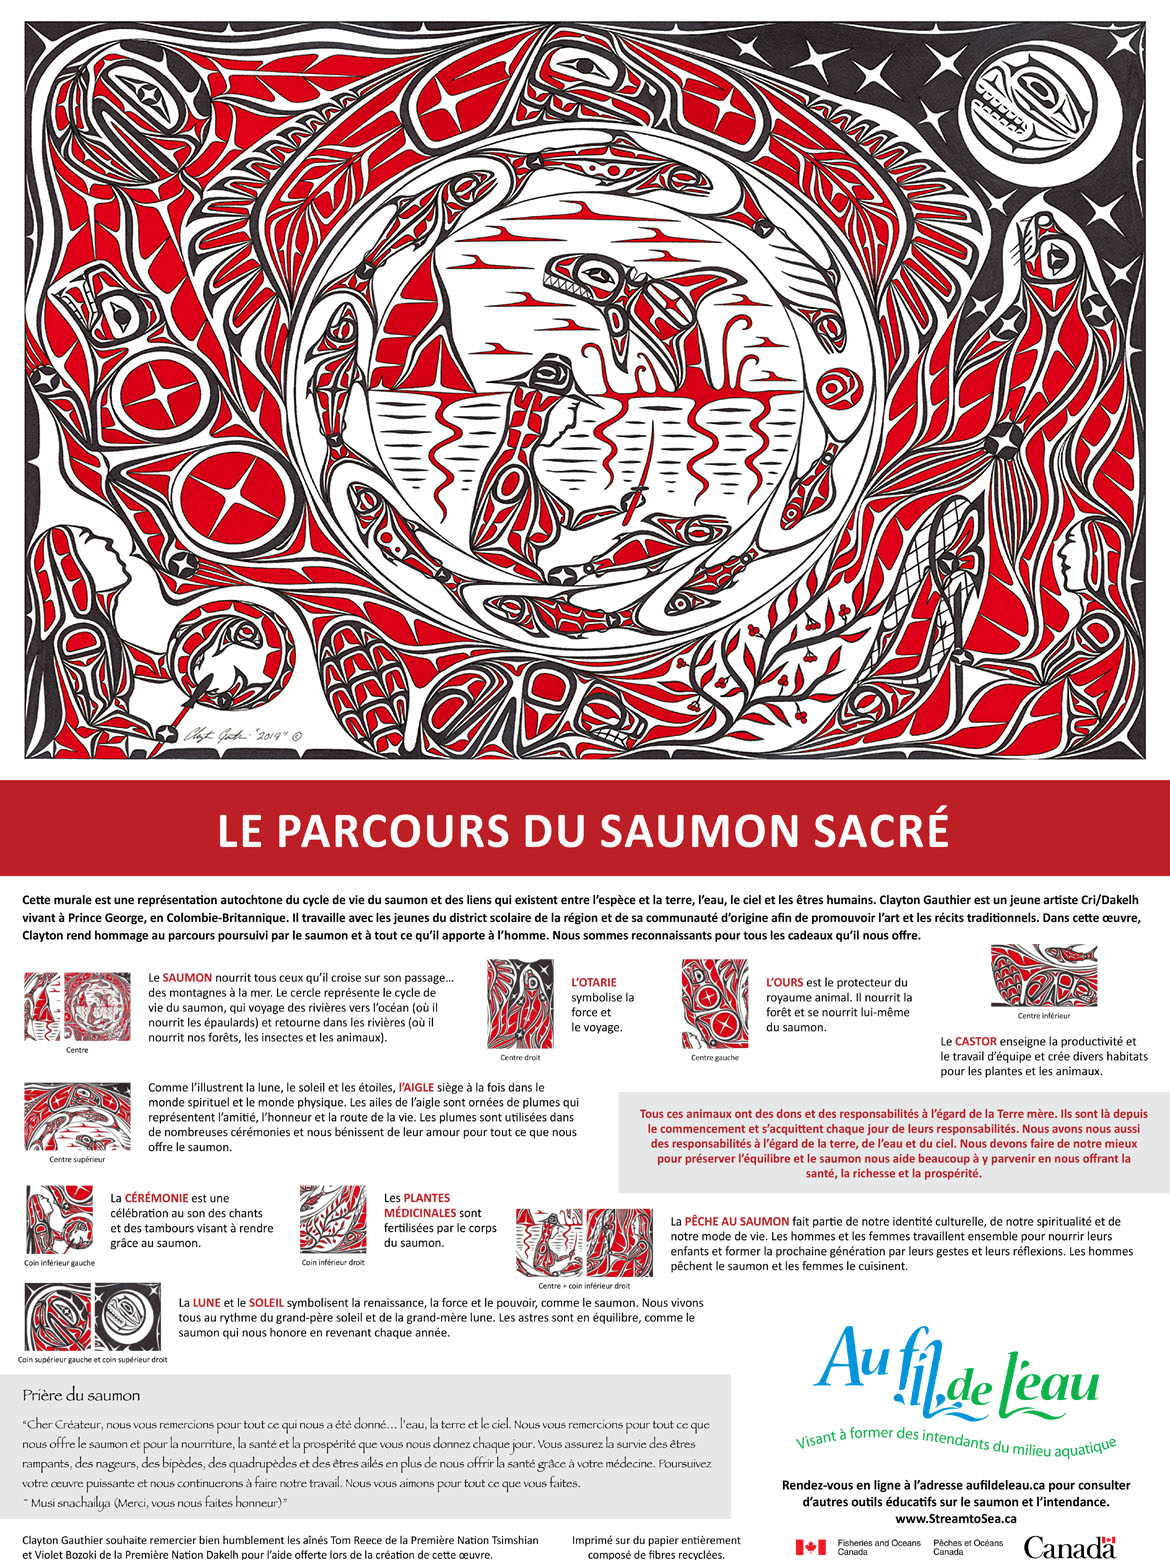 Infographie : Le parcours du saumon sacré